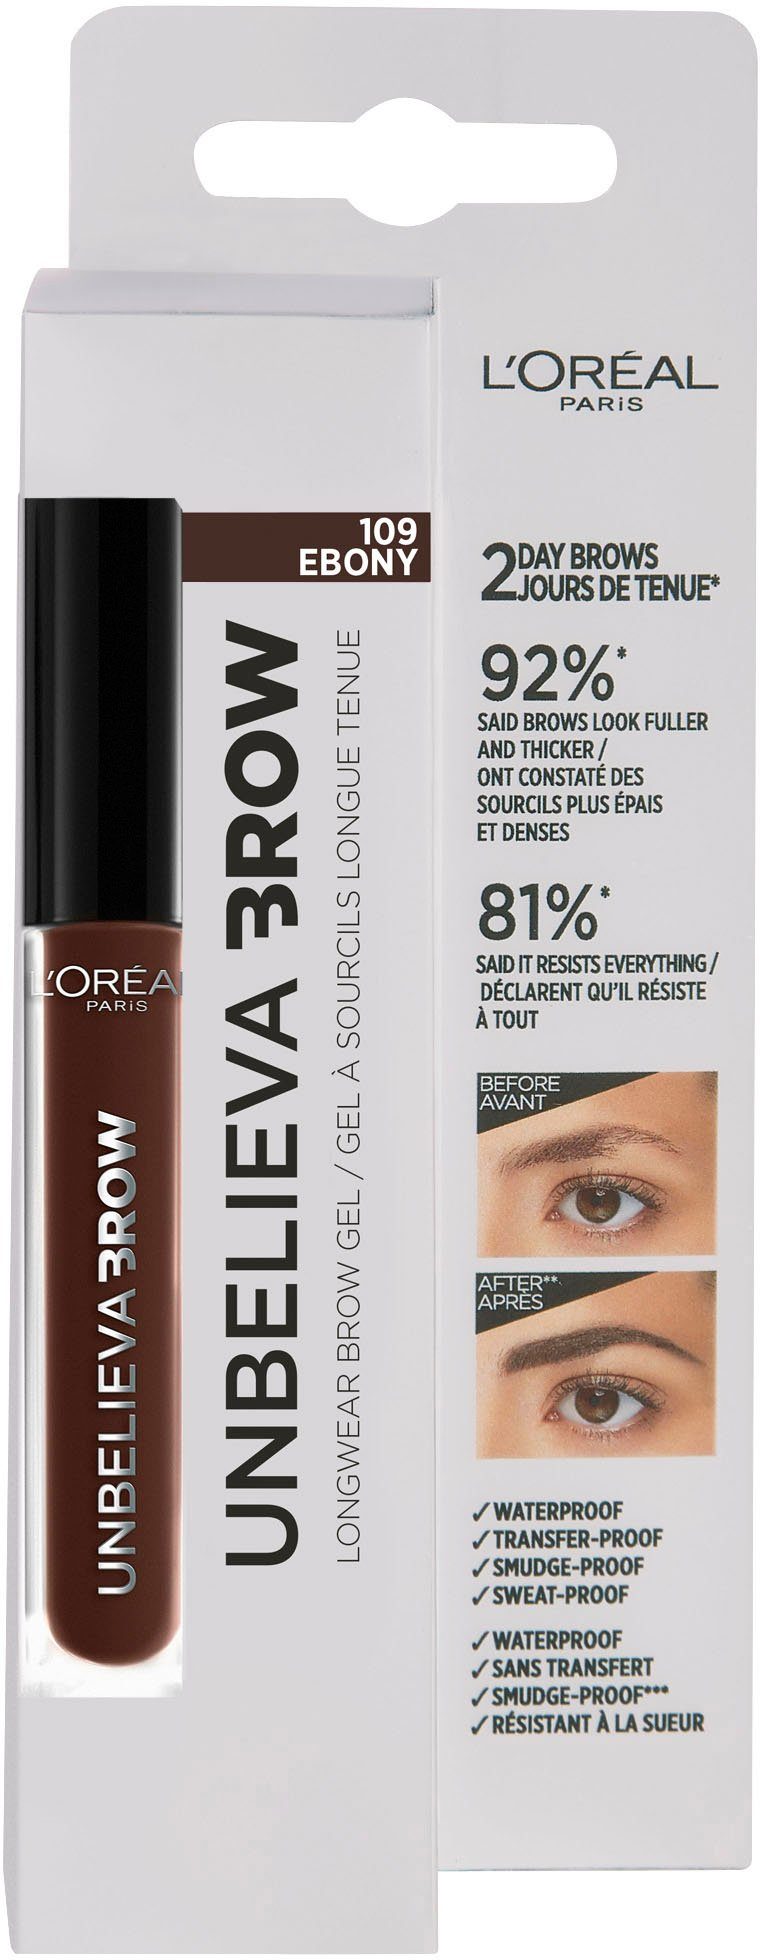 L'ORÉAL PARIS Augenbrauen-Gel Unbelieva Brow, unterschiedlichen Applikatoren, mit wischfest, Ebony Augen-Make-Up 109